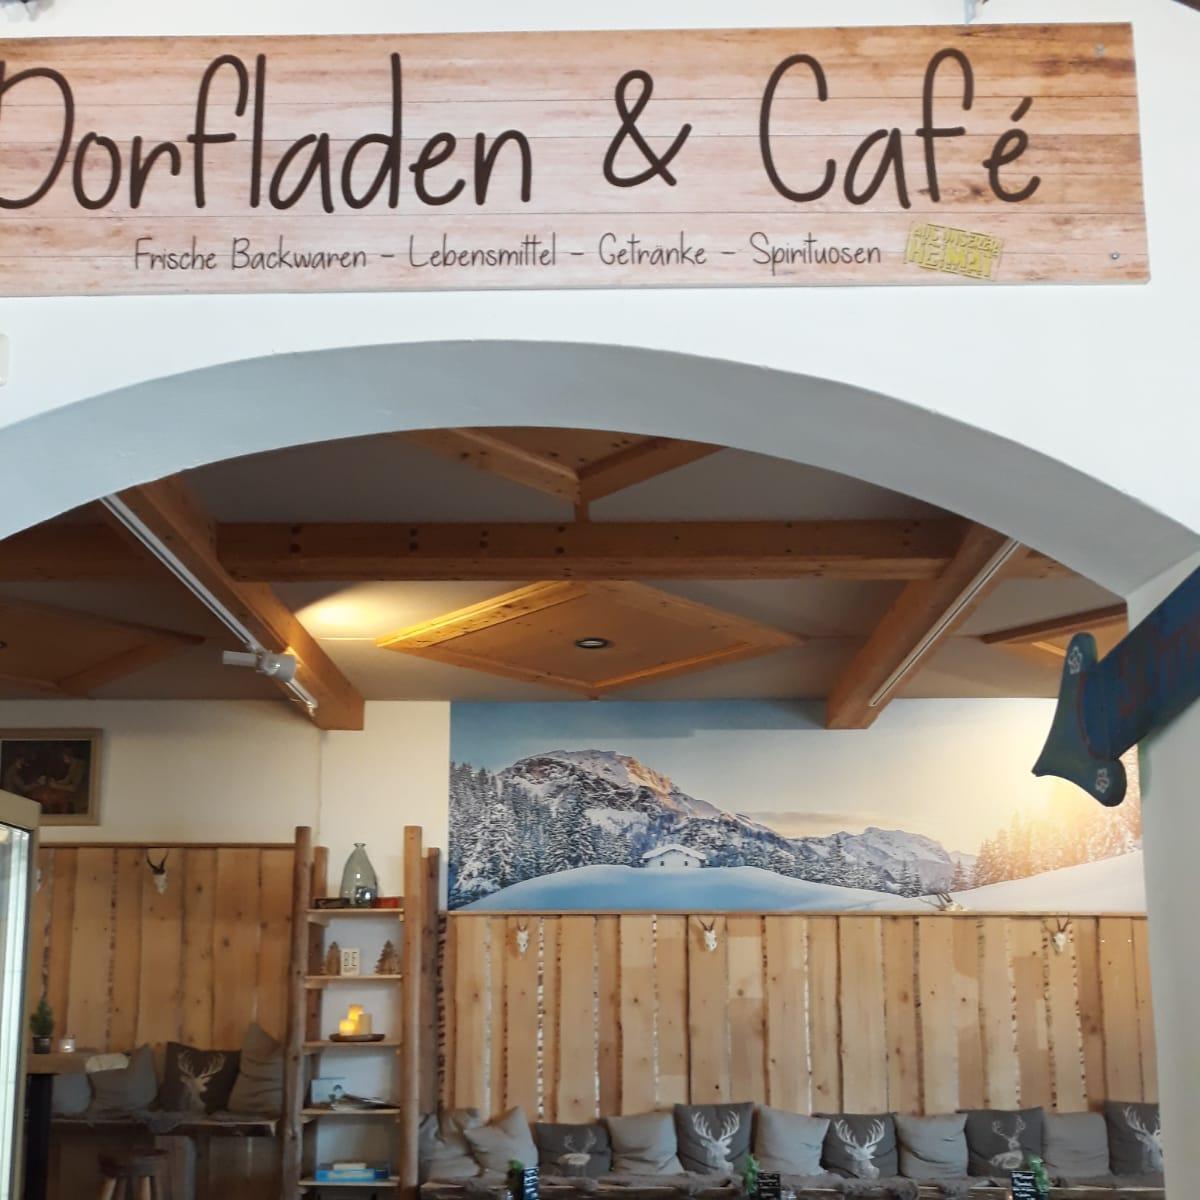 Restaurant "Dorfladen und Cafe" in Sankt Englmar